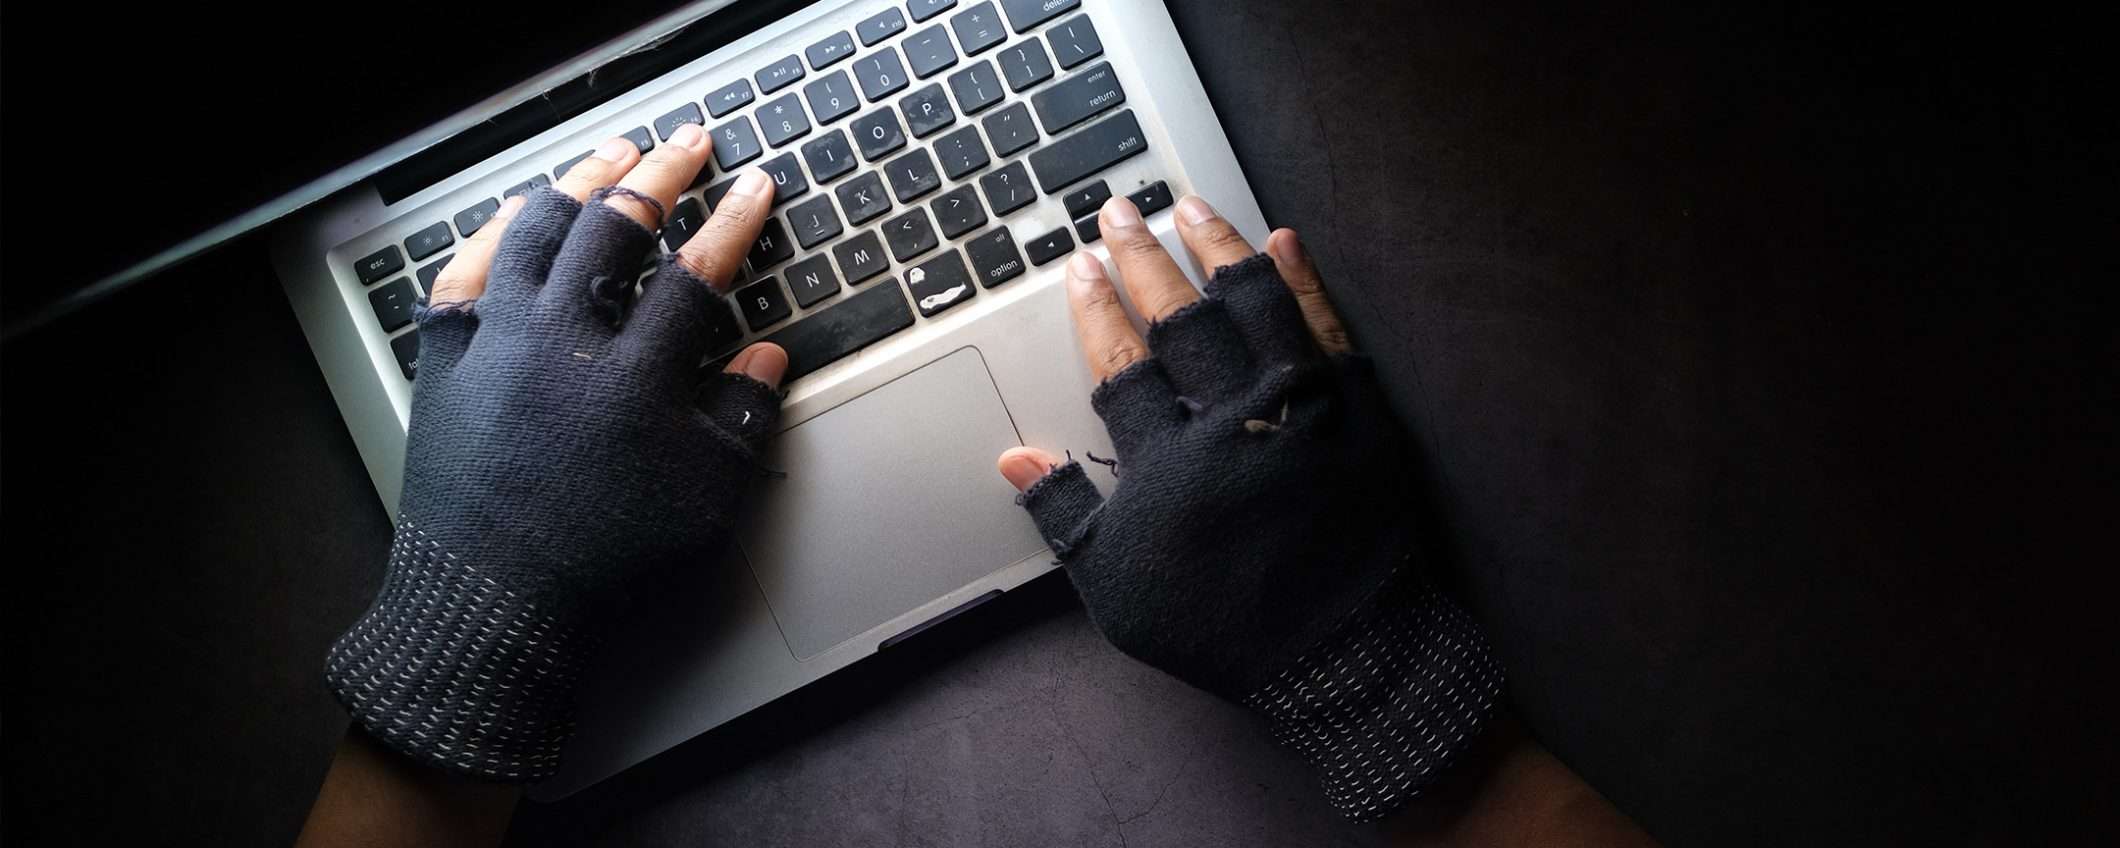 Frodi e furti di identità online in aumento: come difendersi